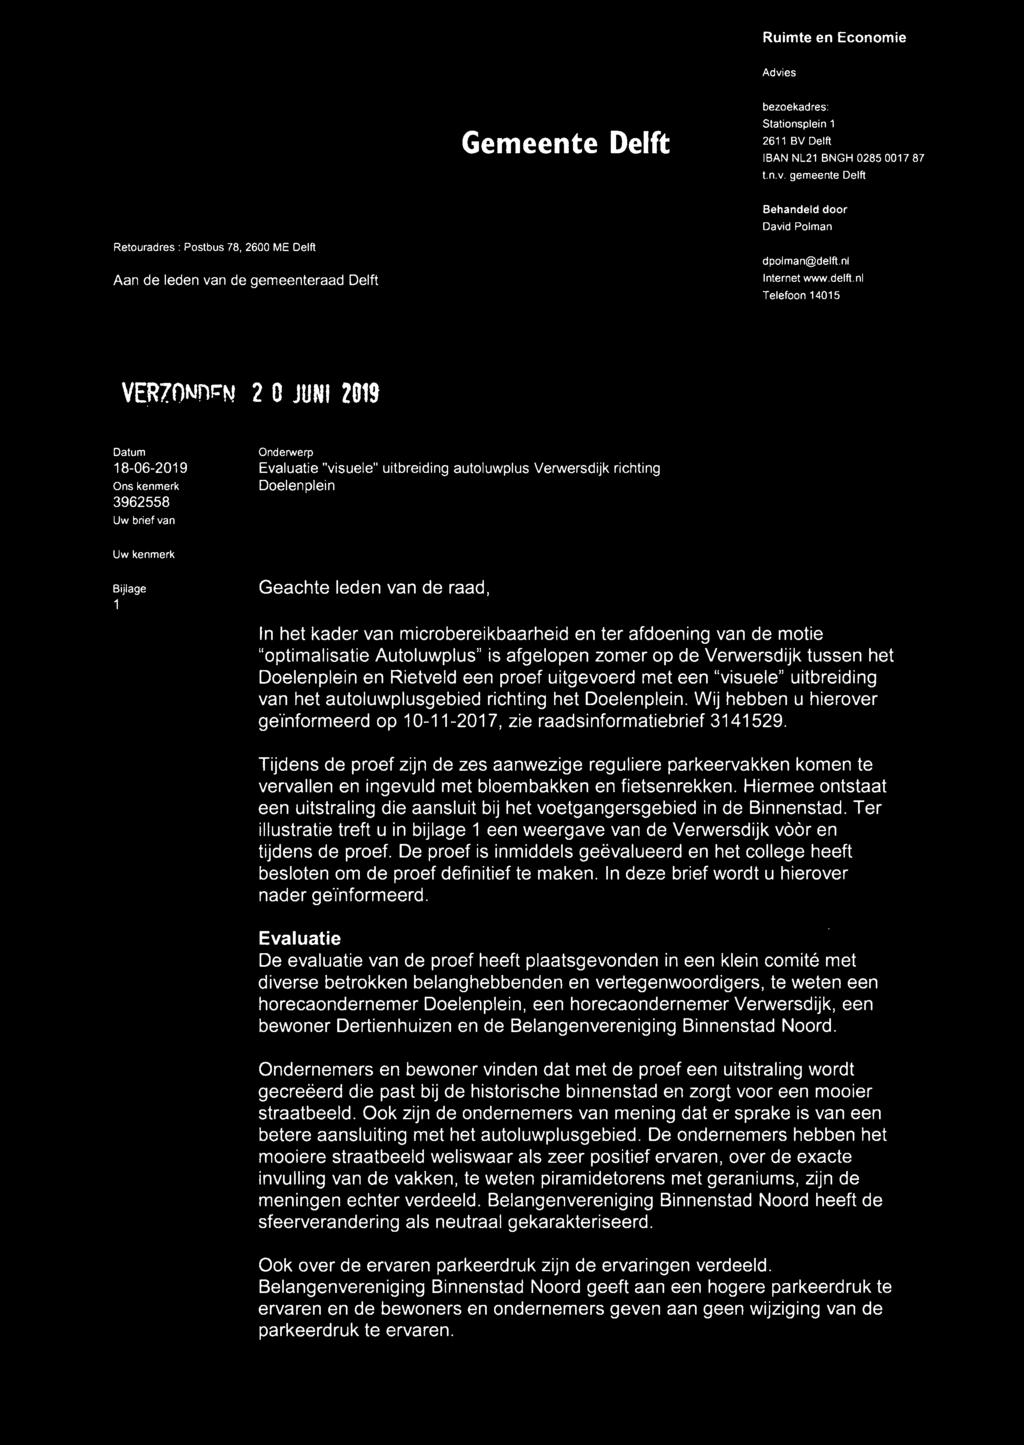 nl Telefn 14015 VERlONnr::N 2 O JUNI - 2019 Uw brief van Onderwerp Evaluatie "visuele" uitbreiding autluwplus Verwersdijk richting Delenplein Uw kenmerk Bijlage 1 Geachte leden van de raad, In het